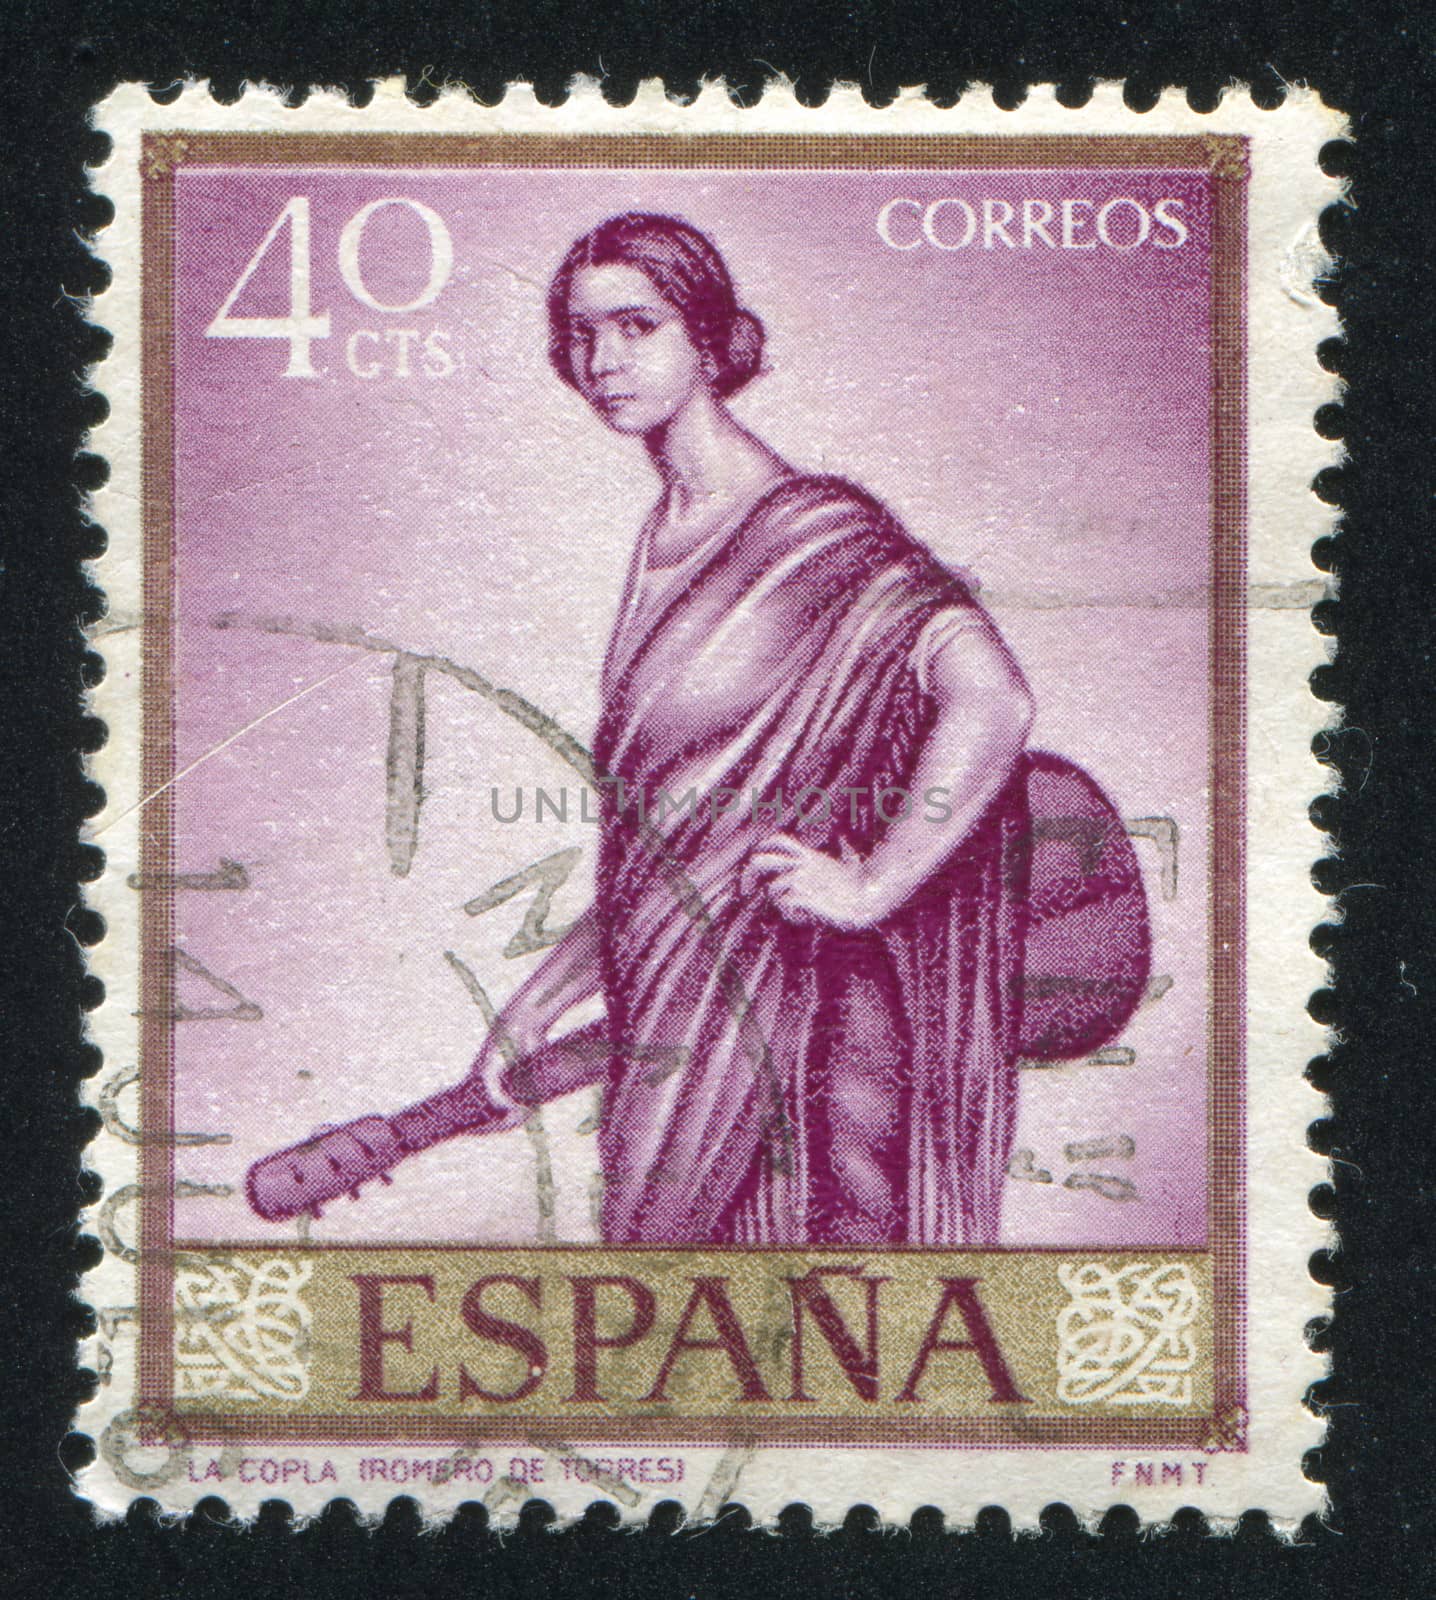 SPAIN - CIRCA 1965: stamp printed by Spain, shows La Copla by Romero de Torres, circa 1965